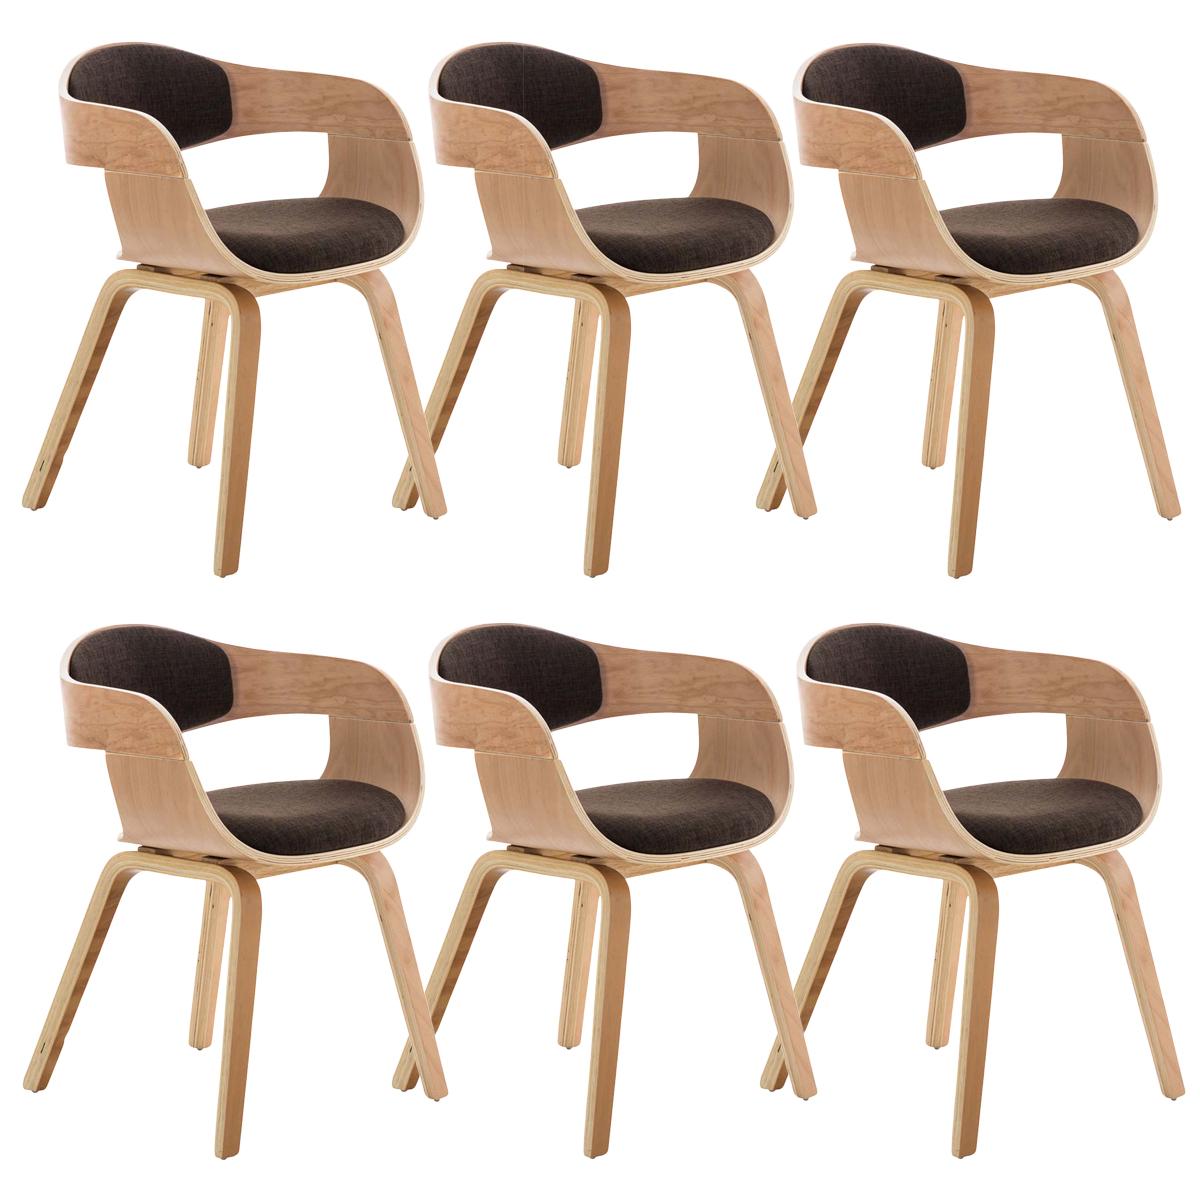 Lote de 6 sillas de Comedor BOLONIA, en Tela Marrón, Estructura de Madera color Natural